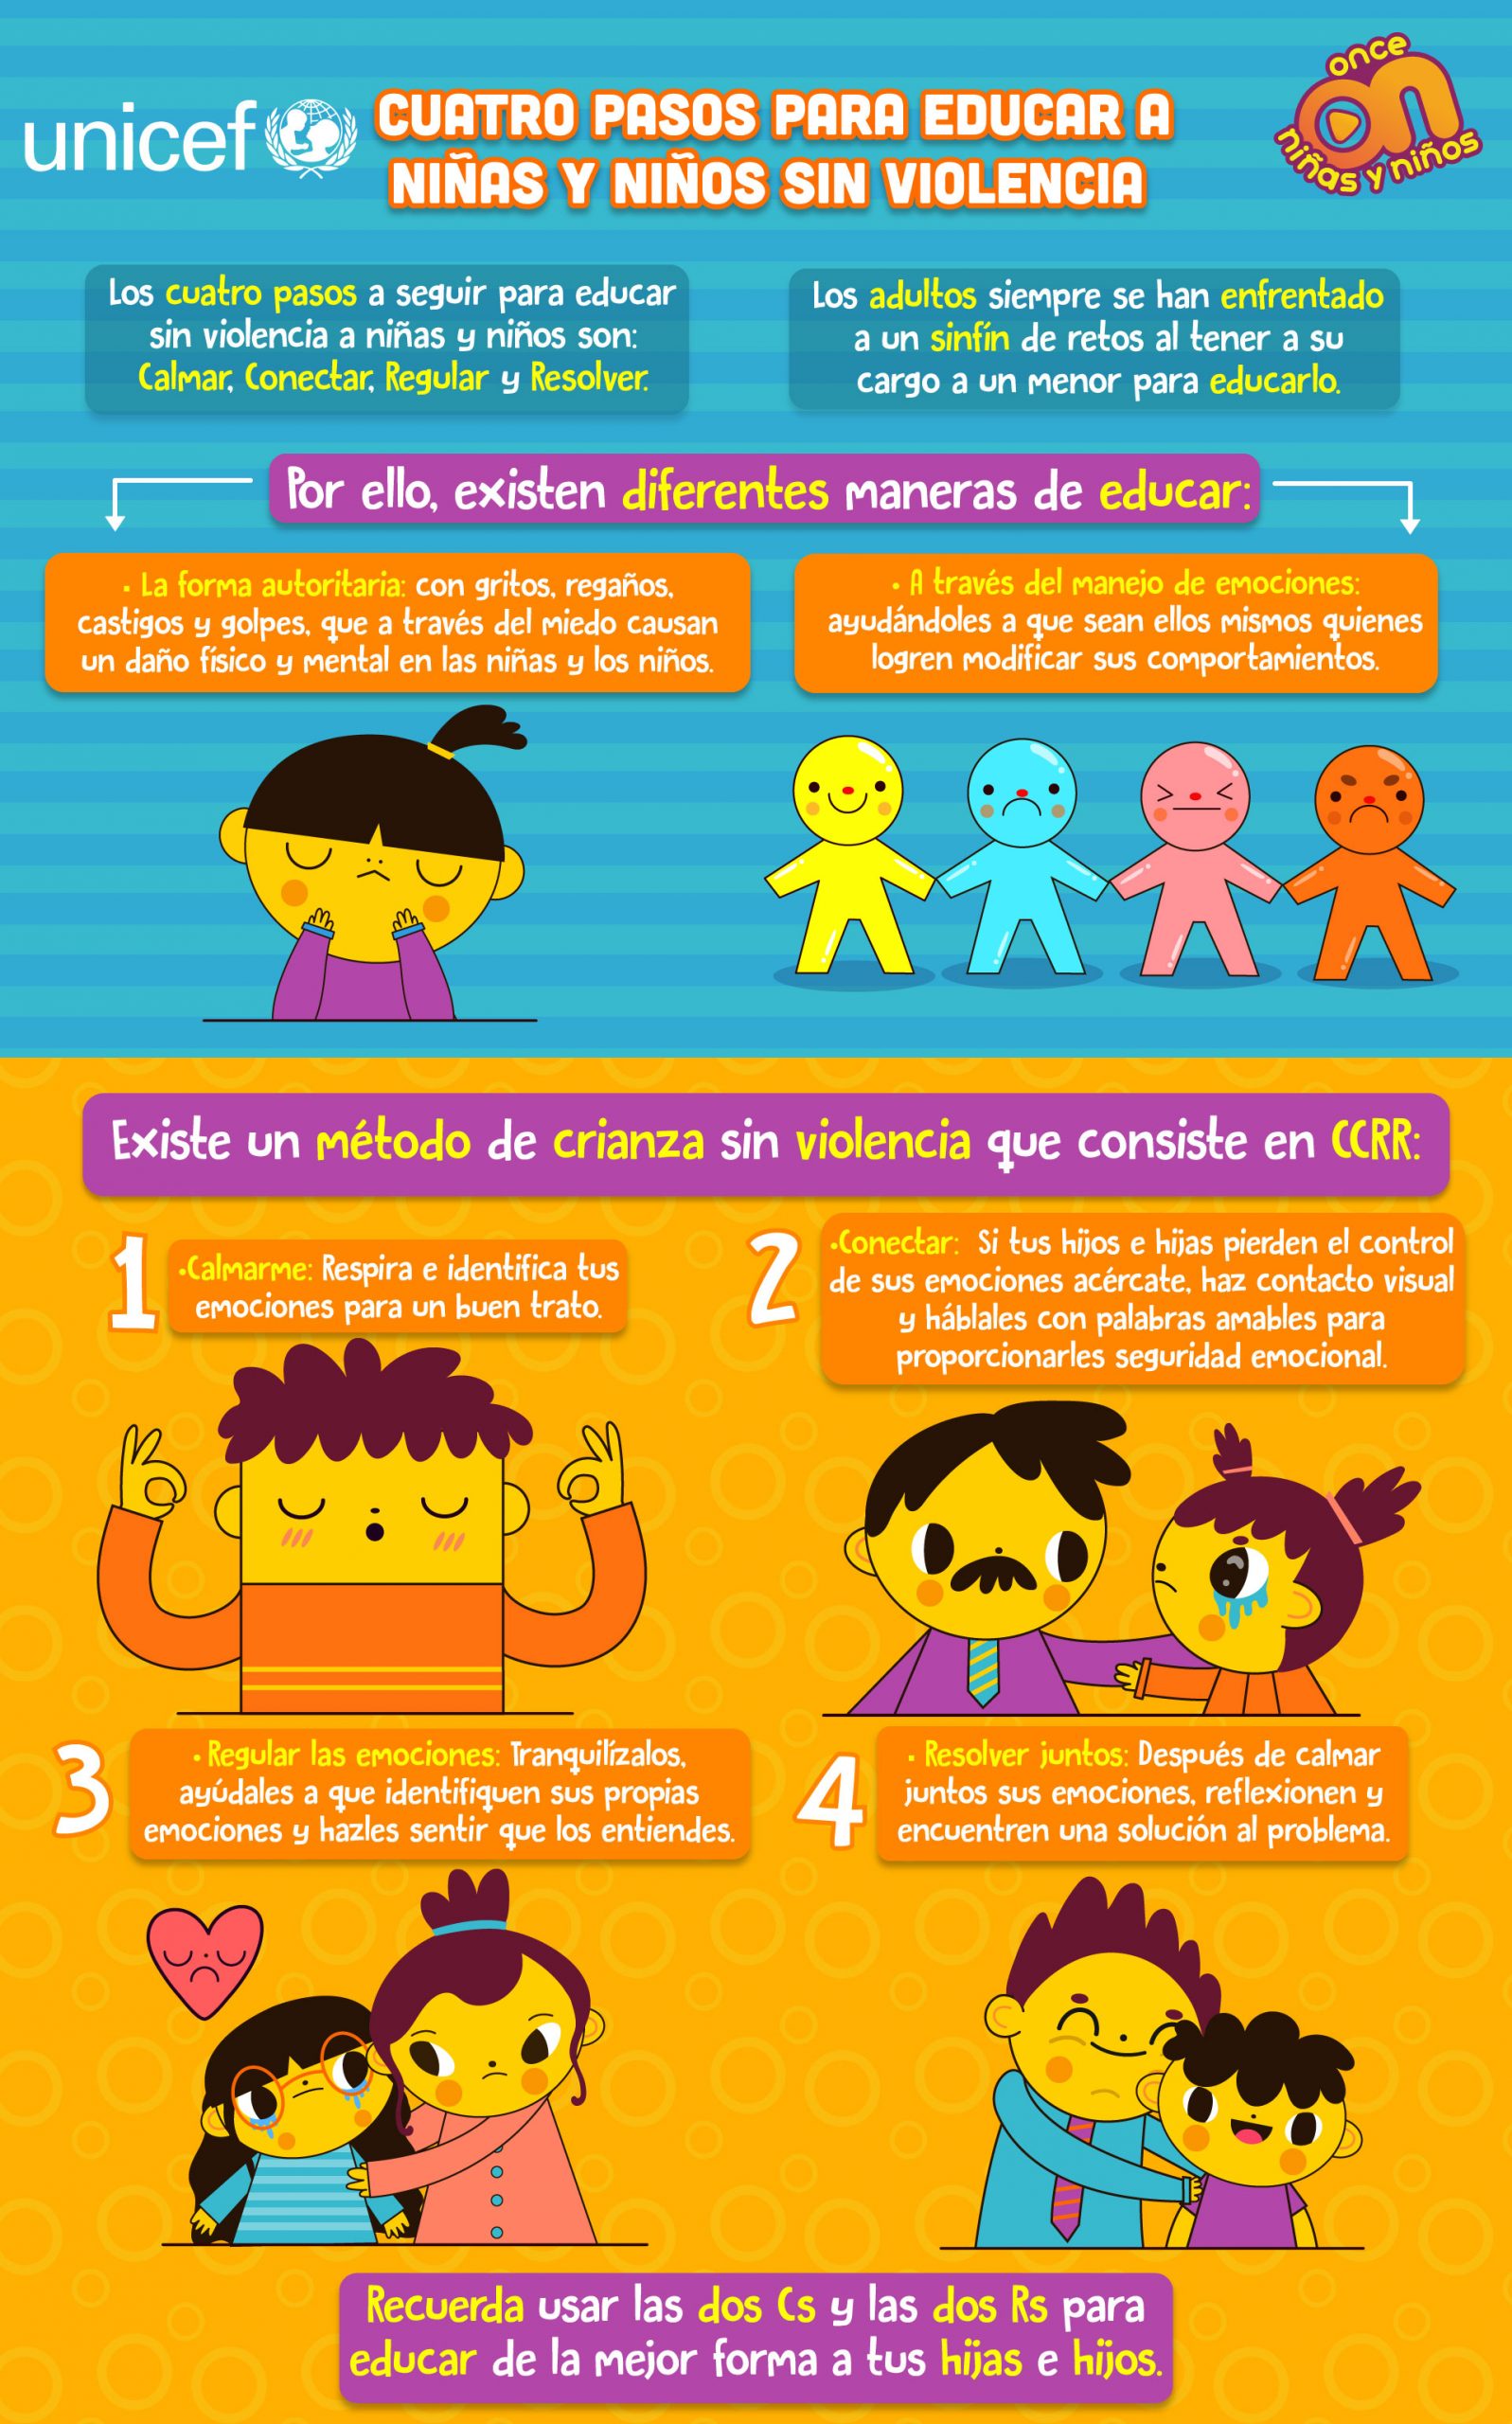 Cuatro pasos para educar a niñas y niños sin violencia